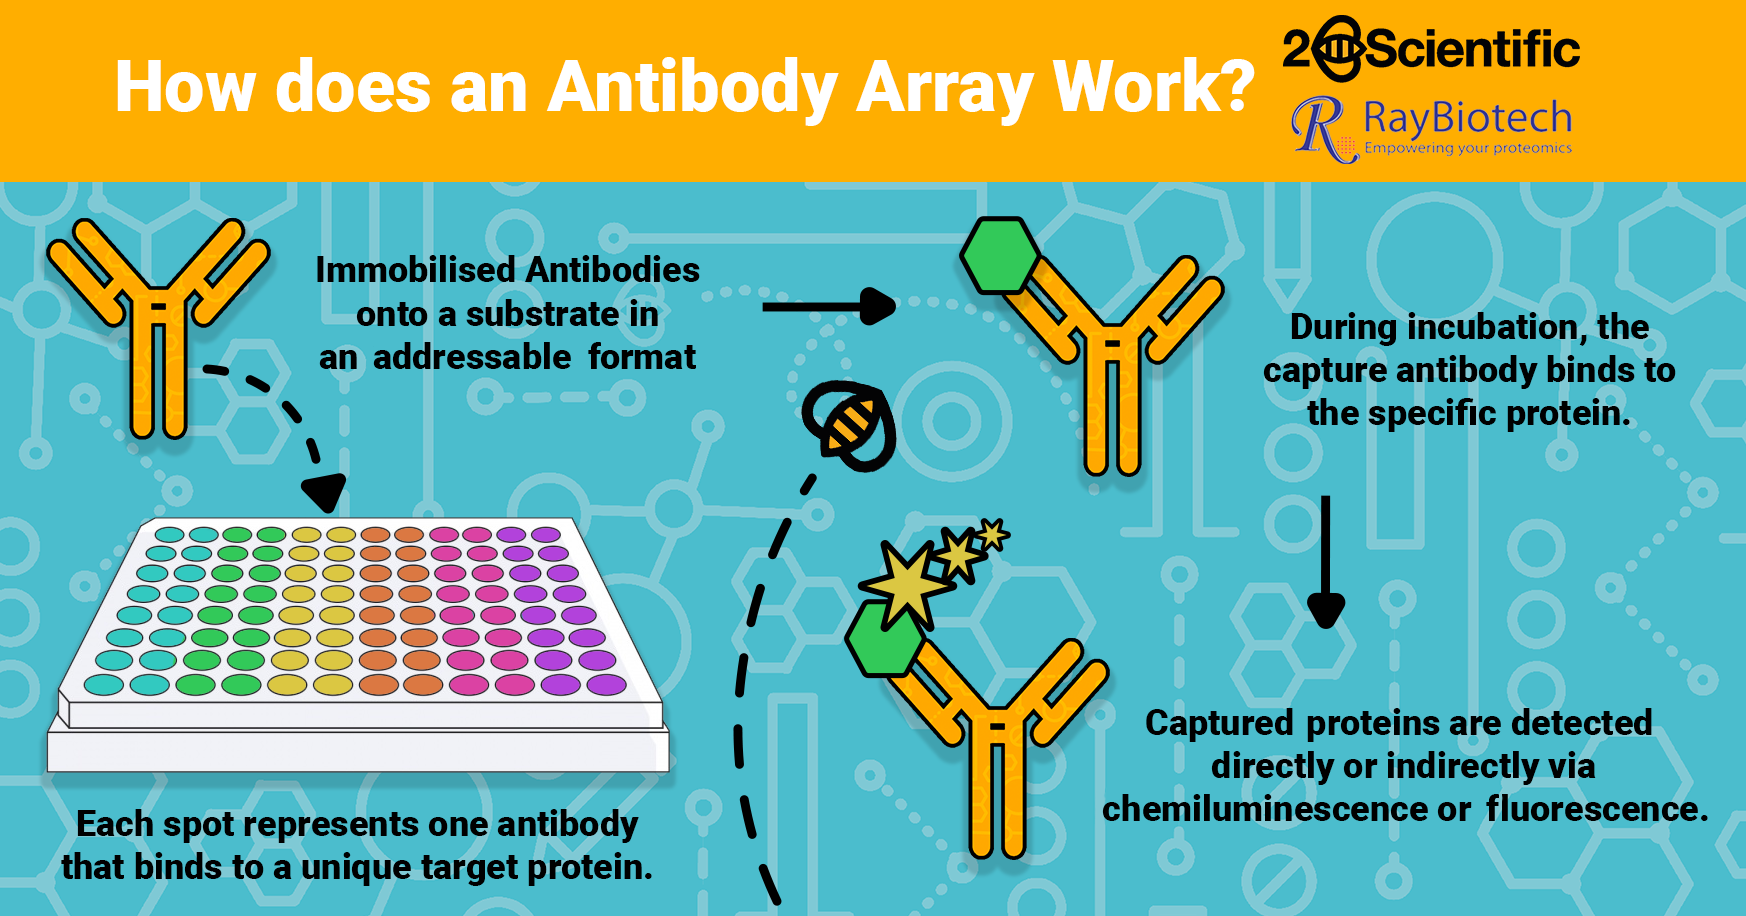 RayBiotech Antibody Arrays